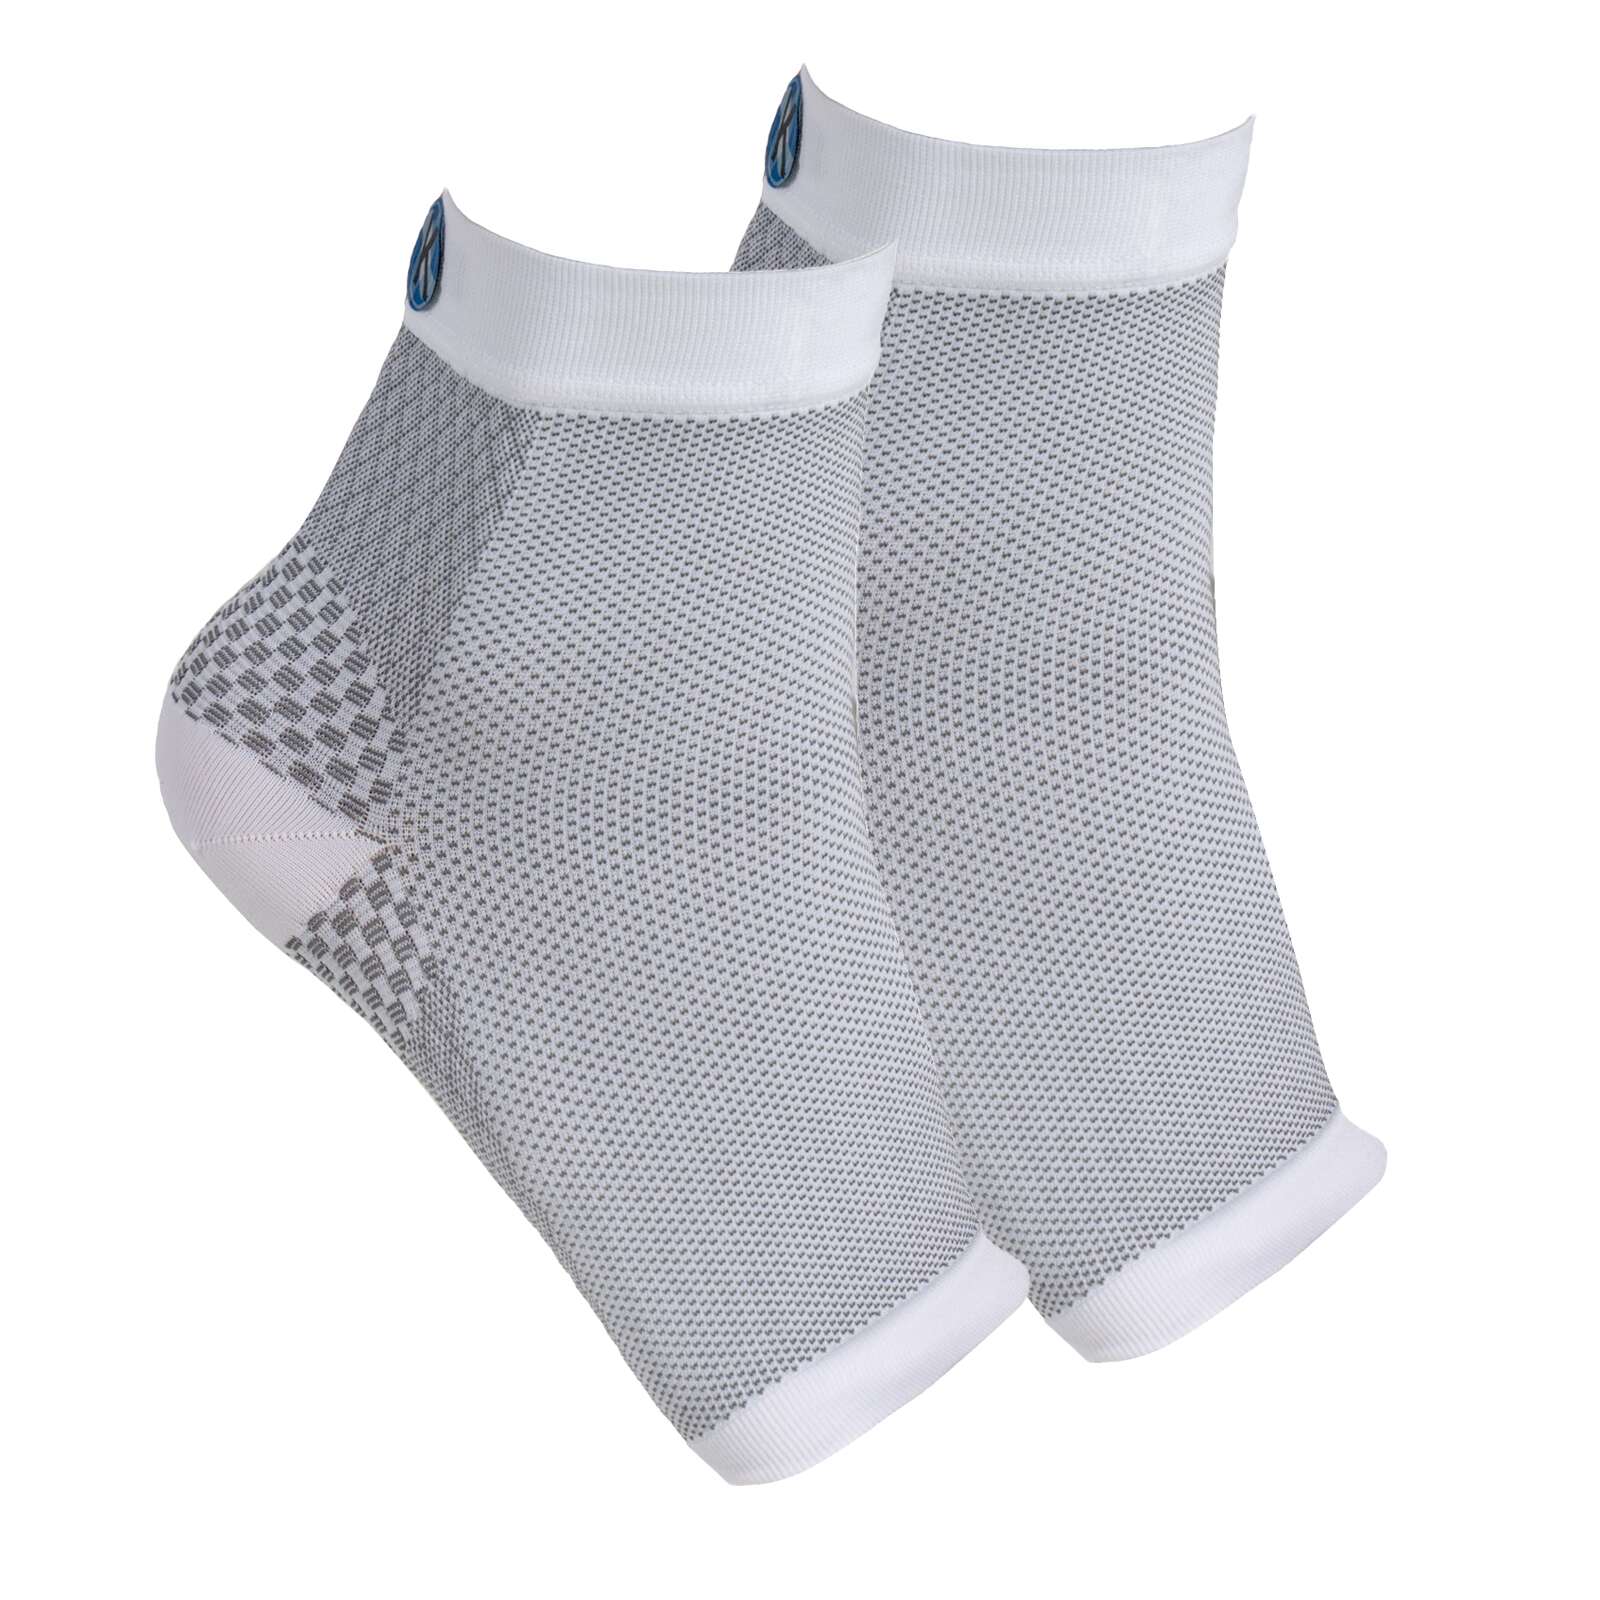 IWA 2900 Short Compression Sleeve Gymnastic Socks - Plantar